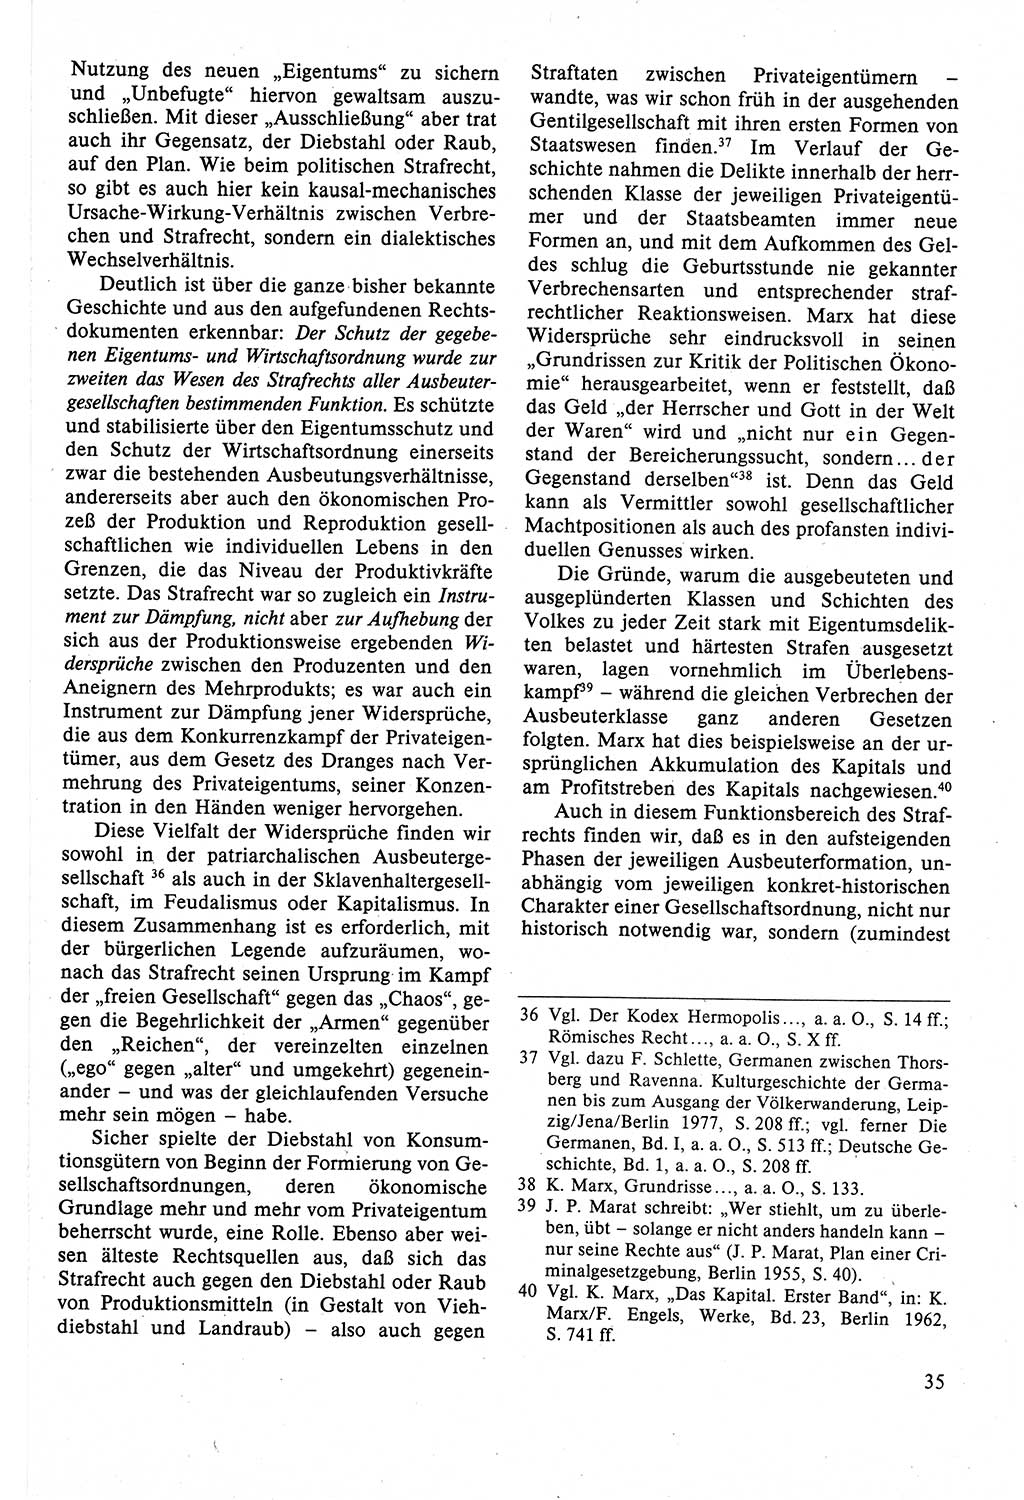 Strafrecht der DDR (Deutsche Demokratische Republik), Lehrbuch 1988, Seite 35 (Strafr. DDR Lb. 1988, S. 35)